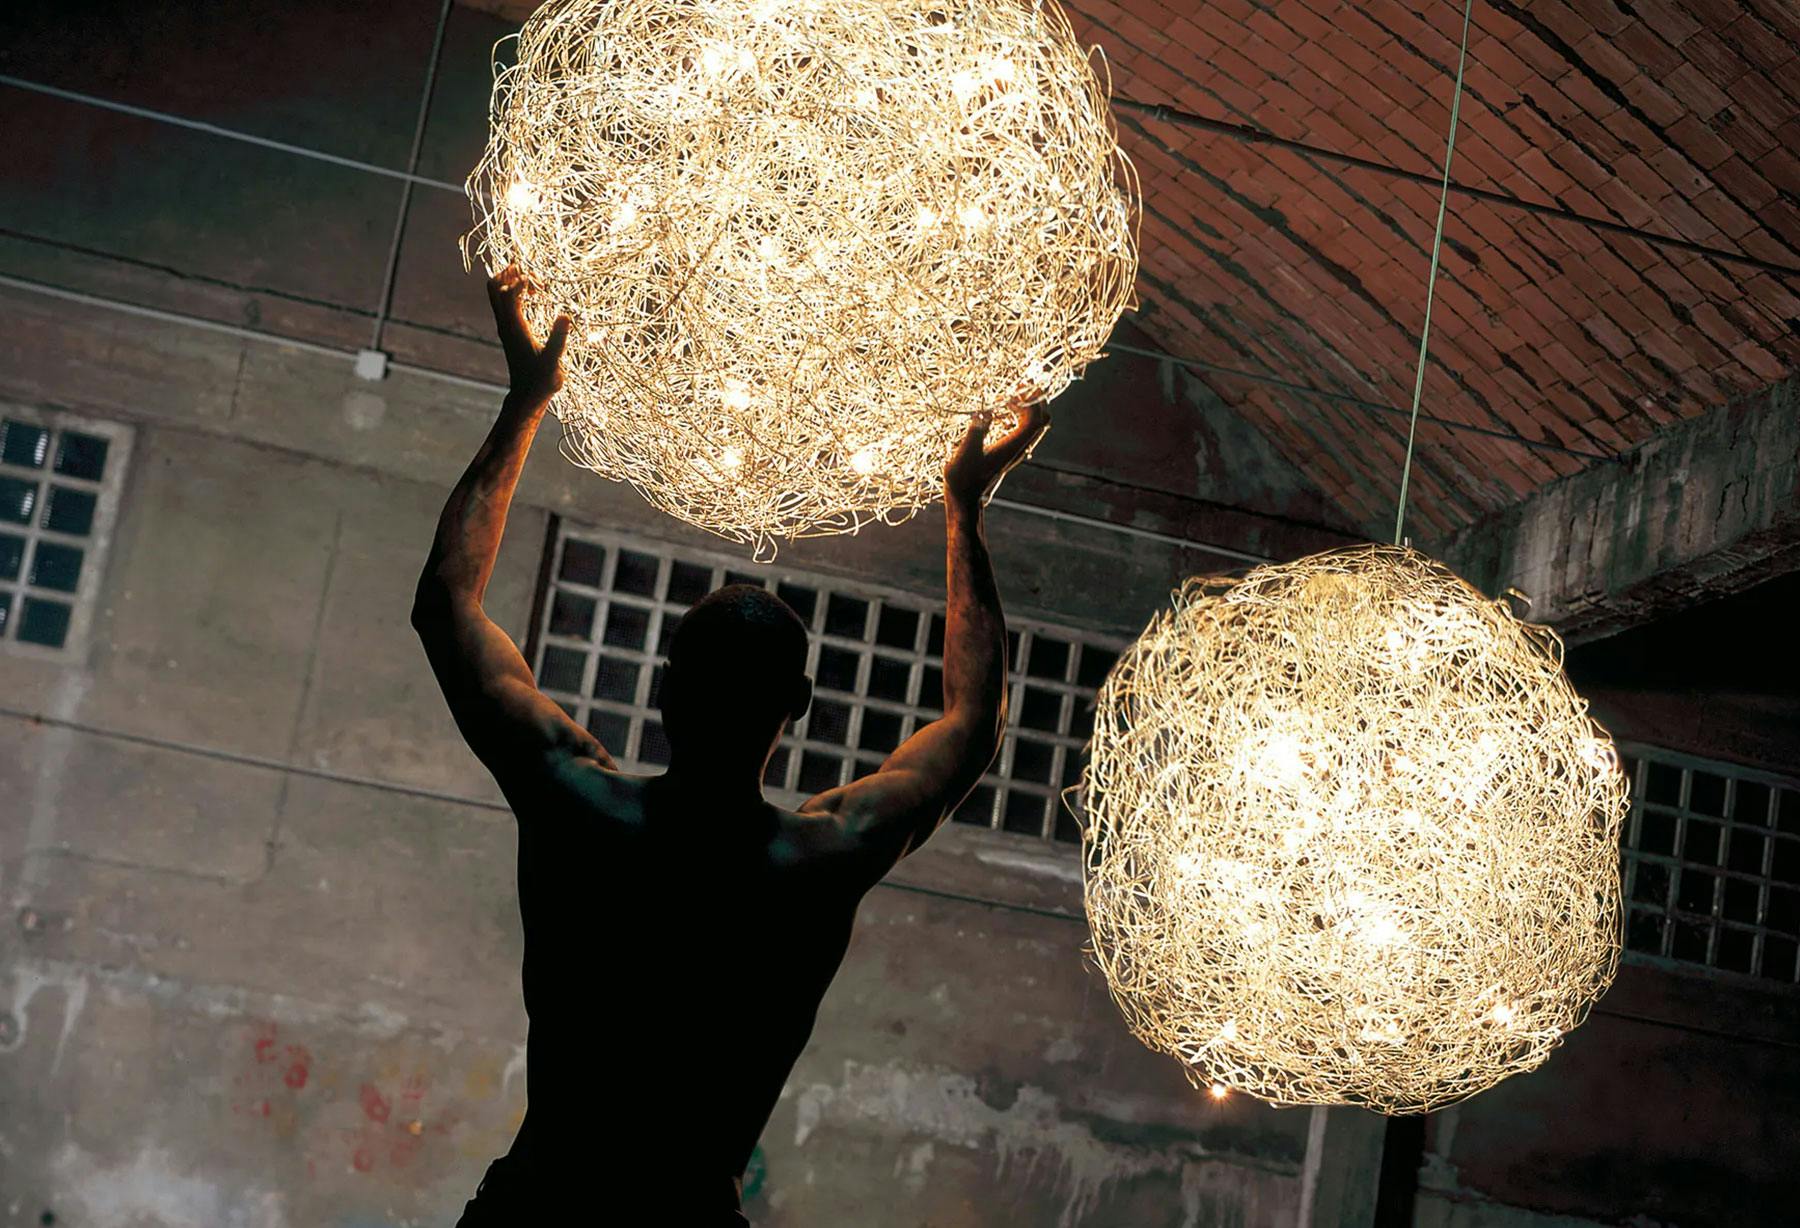 <p>La lámpara más famosa del mundo, Fil de Fer, fue seleccionada para representar al Made in Italy en la exposición en el Pabellón de Italia en la Exposición Universal de Shanghái 2010, y después pasó a formar parte de la colección del museo de Shanghái al final de su construcción.</p>
